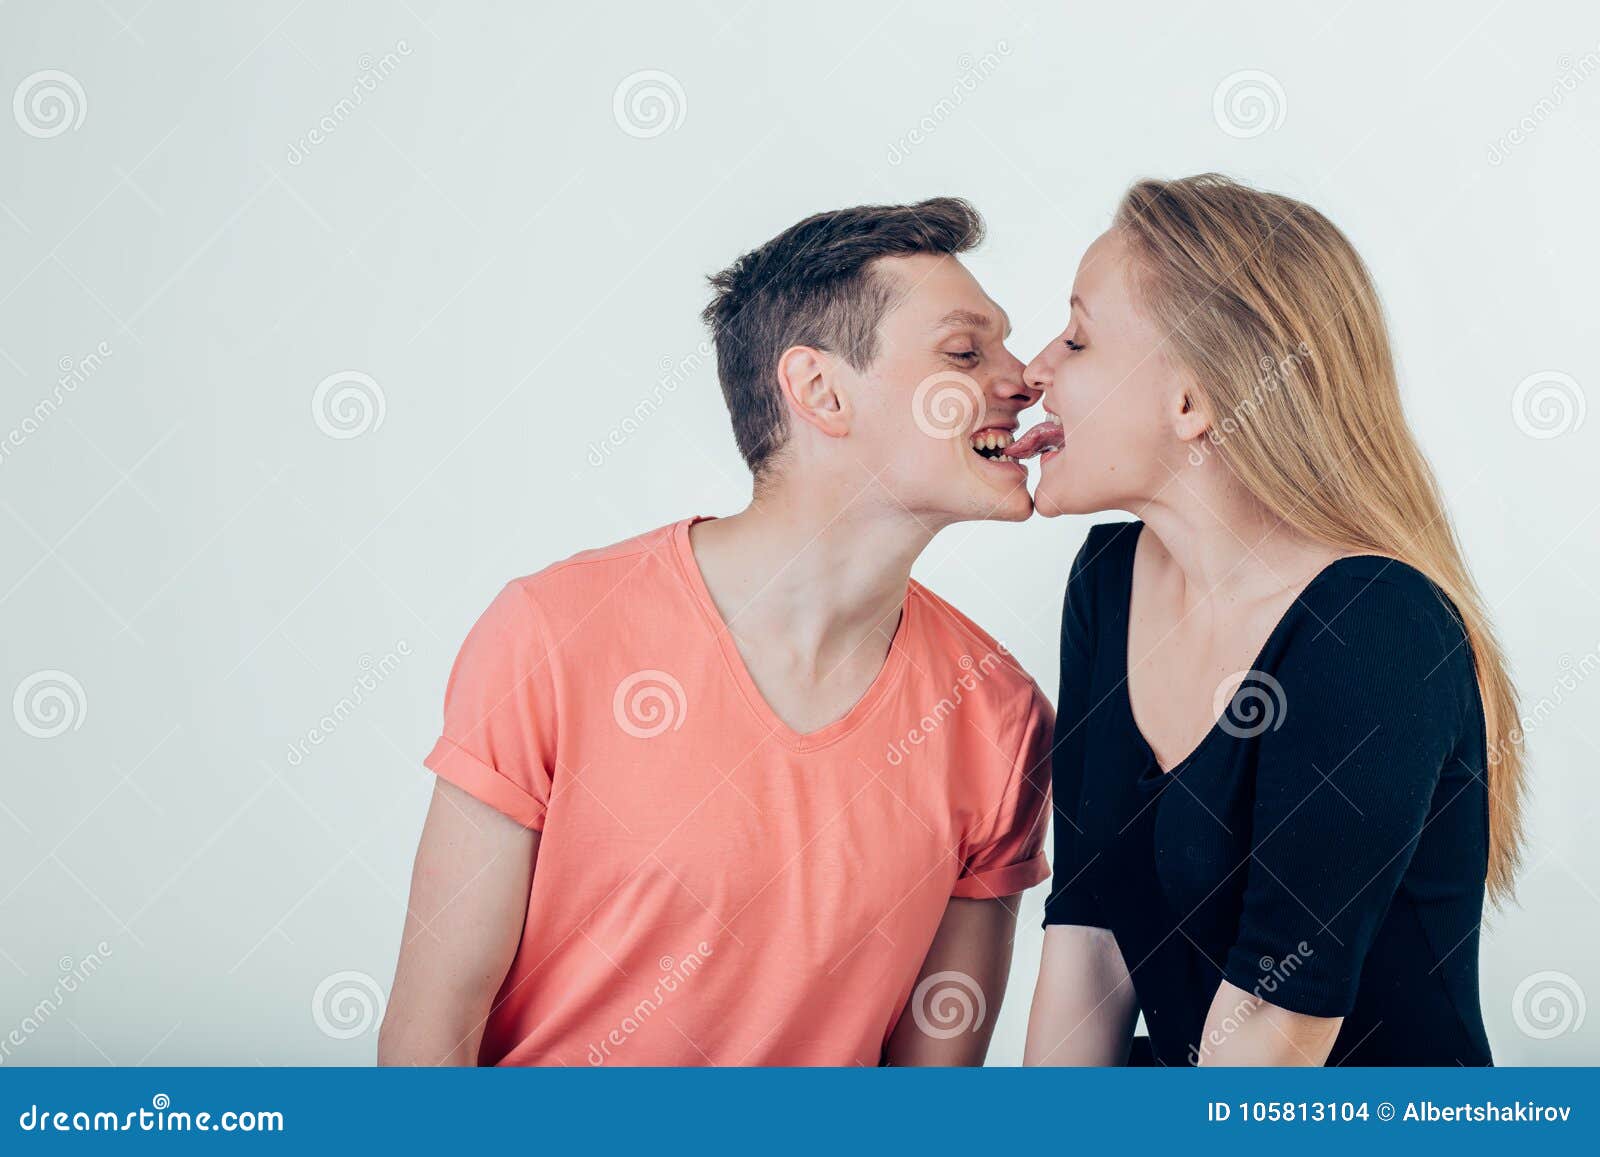 Zunge küssen mit Wie küsse